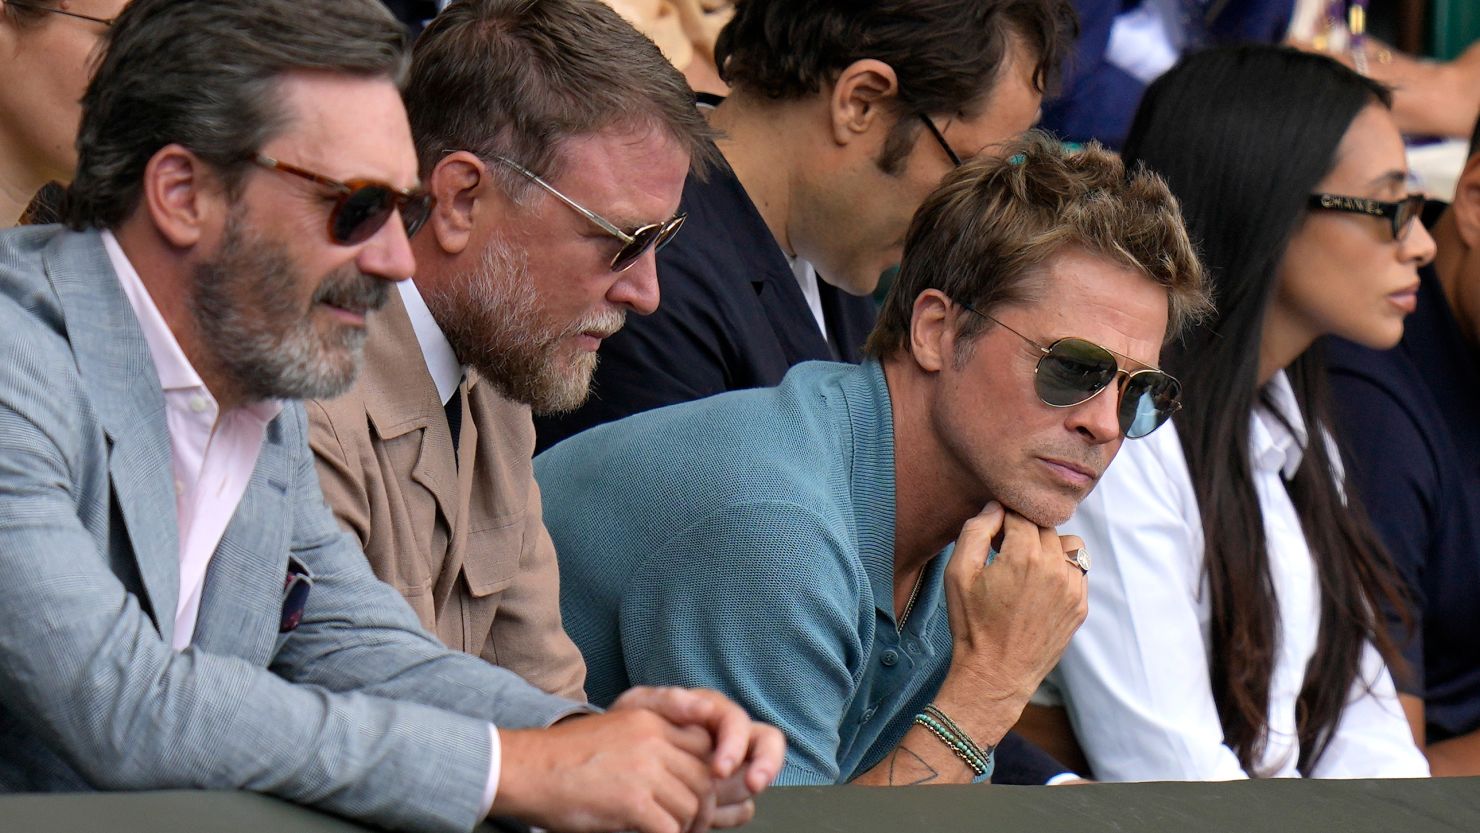 Brad Pitt among stars at Wimbledon for men’s final | CNN